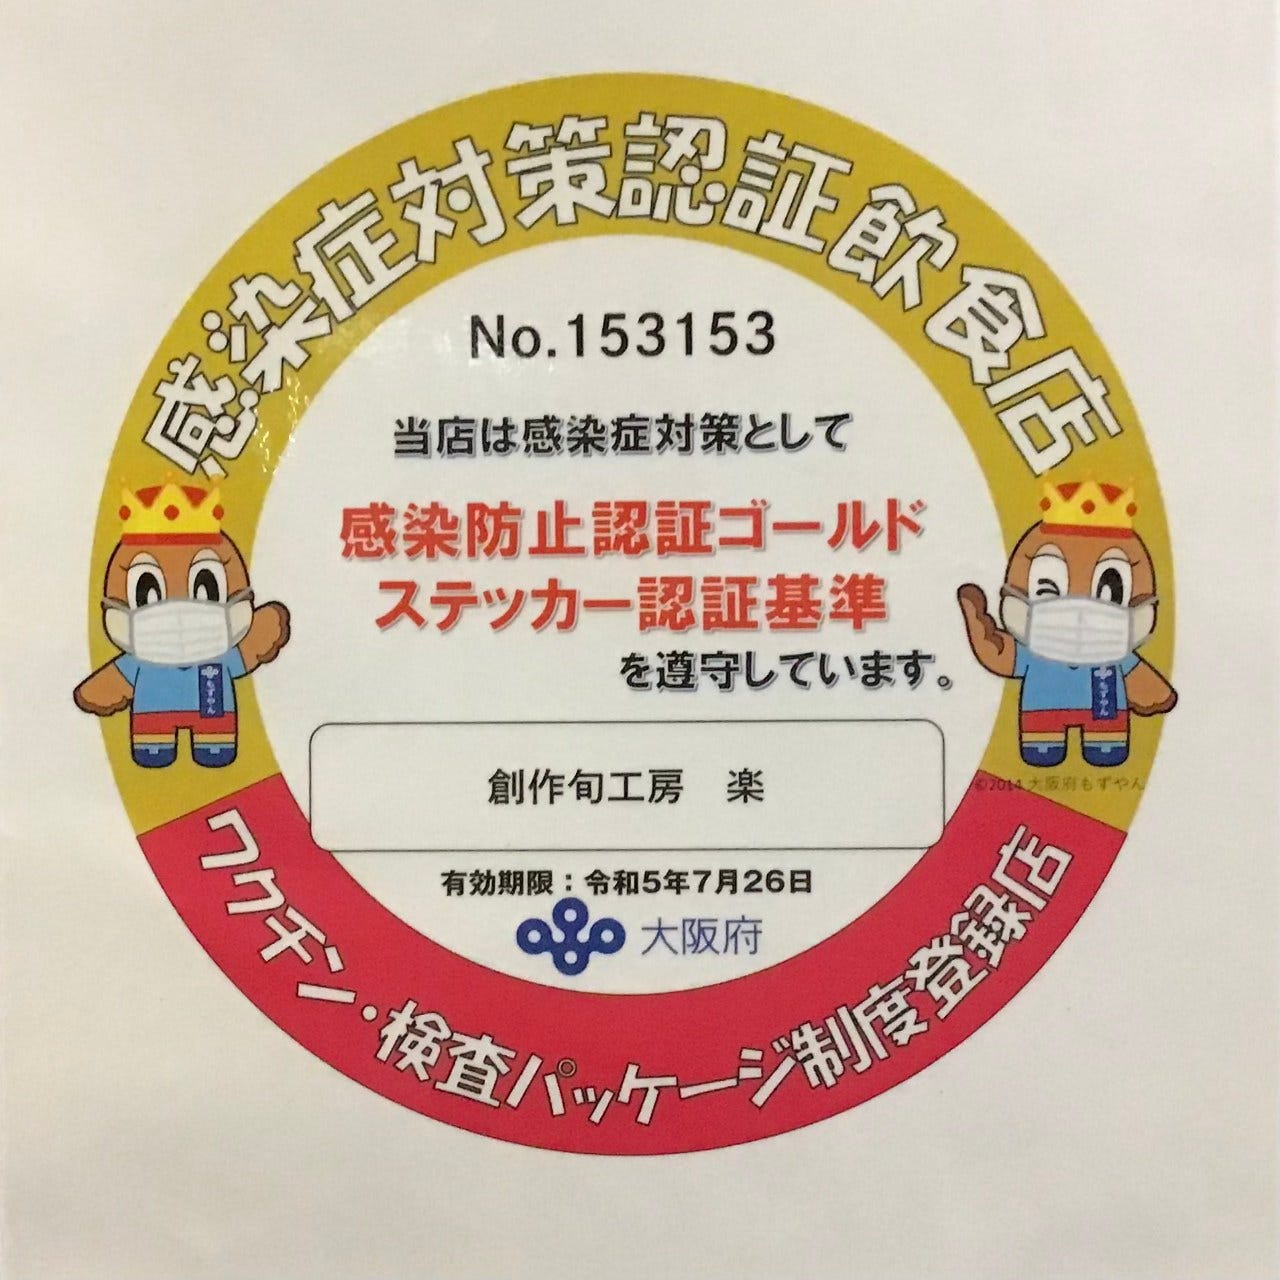 大阪府感染防止認証ゴールドステッカー
認証登録済み 